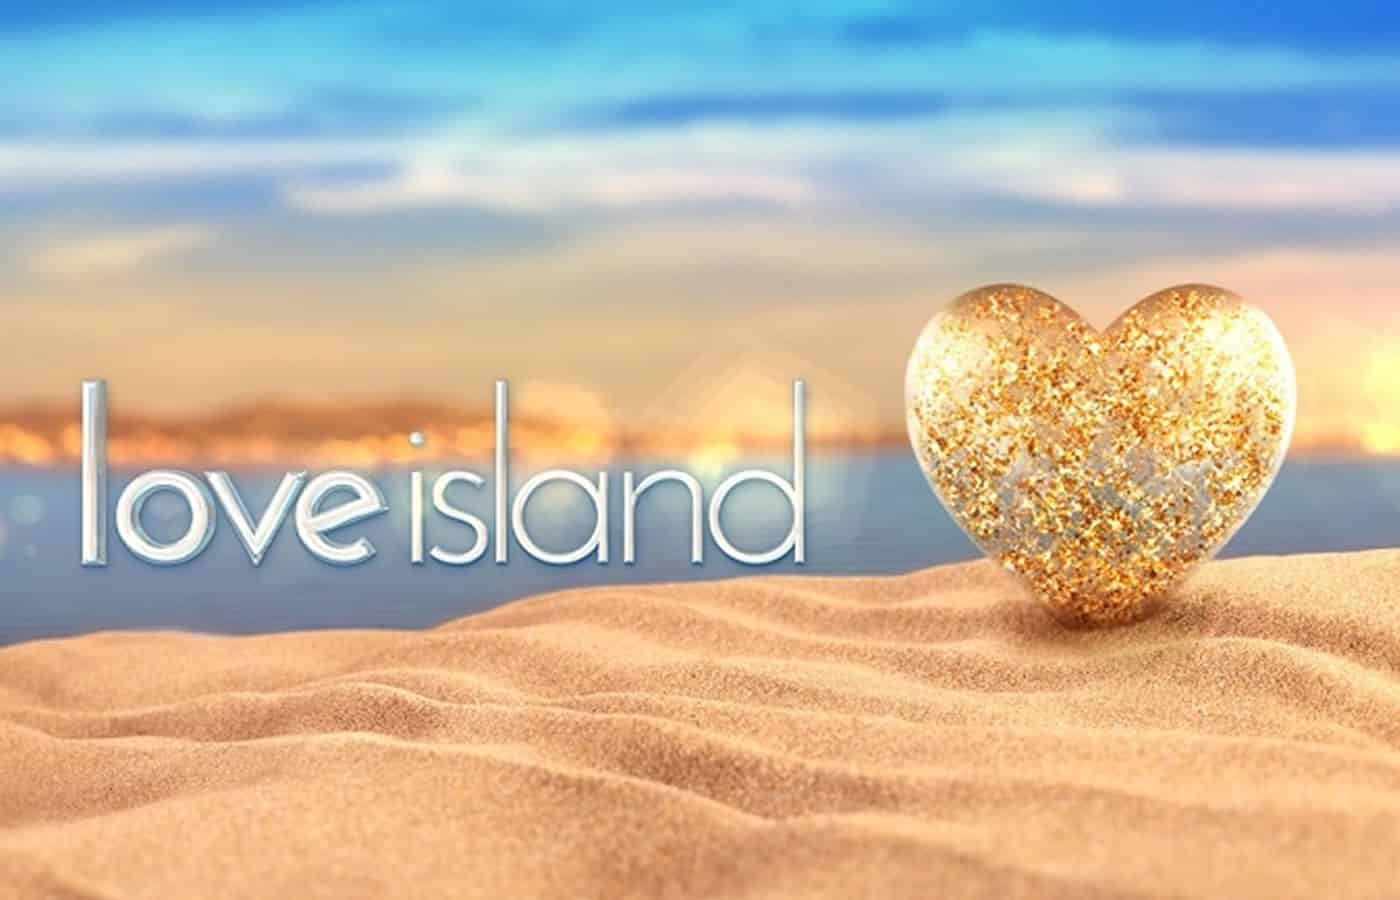 Το νέο ριάλιτι του ΣΚΑΪ είναι γνωστό ότι θα είναι το Love Island, το οποίο έρχεται στο κανάλι του Φαλήρου για να αντικαταστήσει το Big Brother